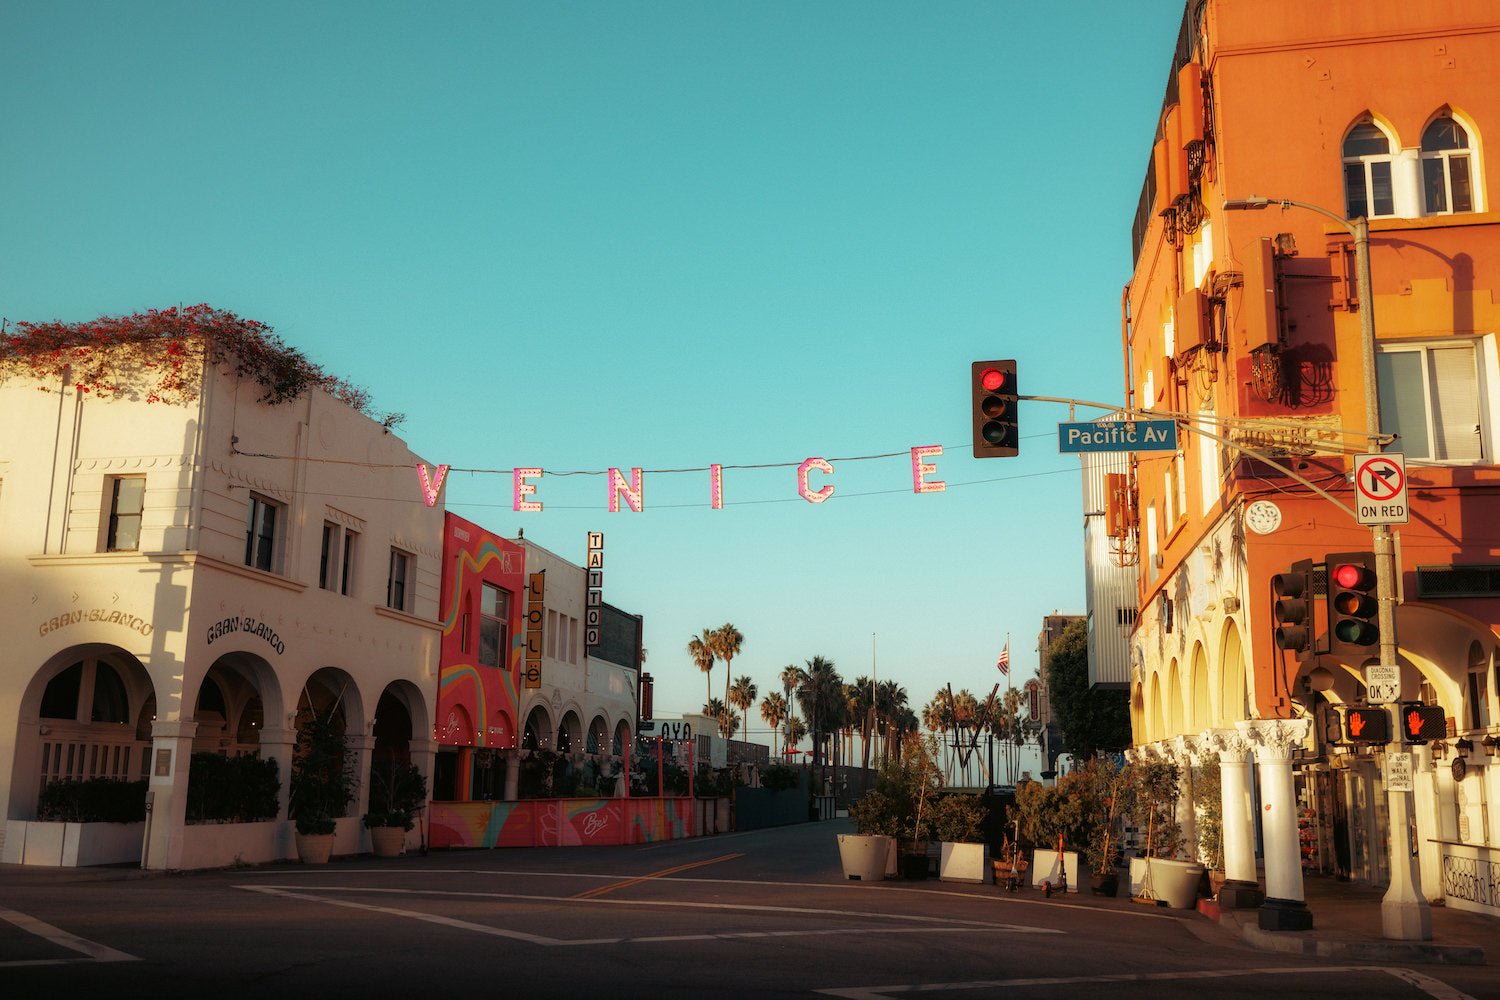 Venice Beach California - Peter Yan Studio